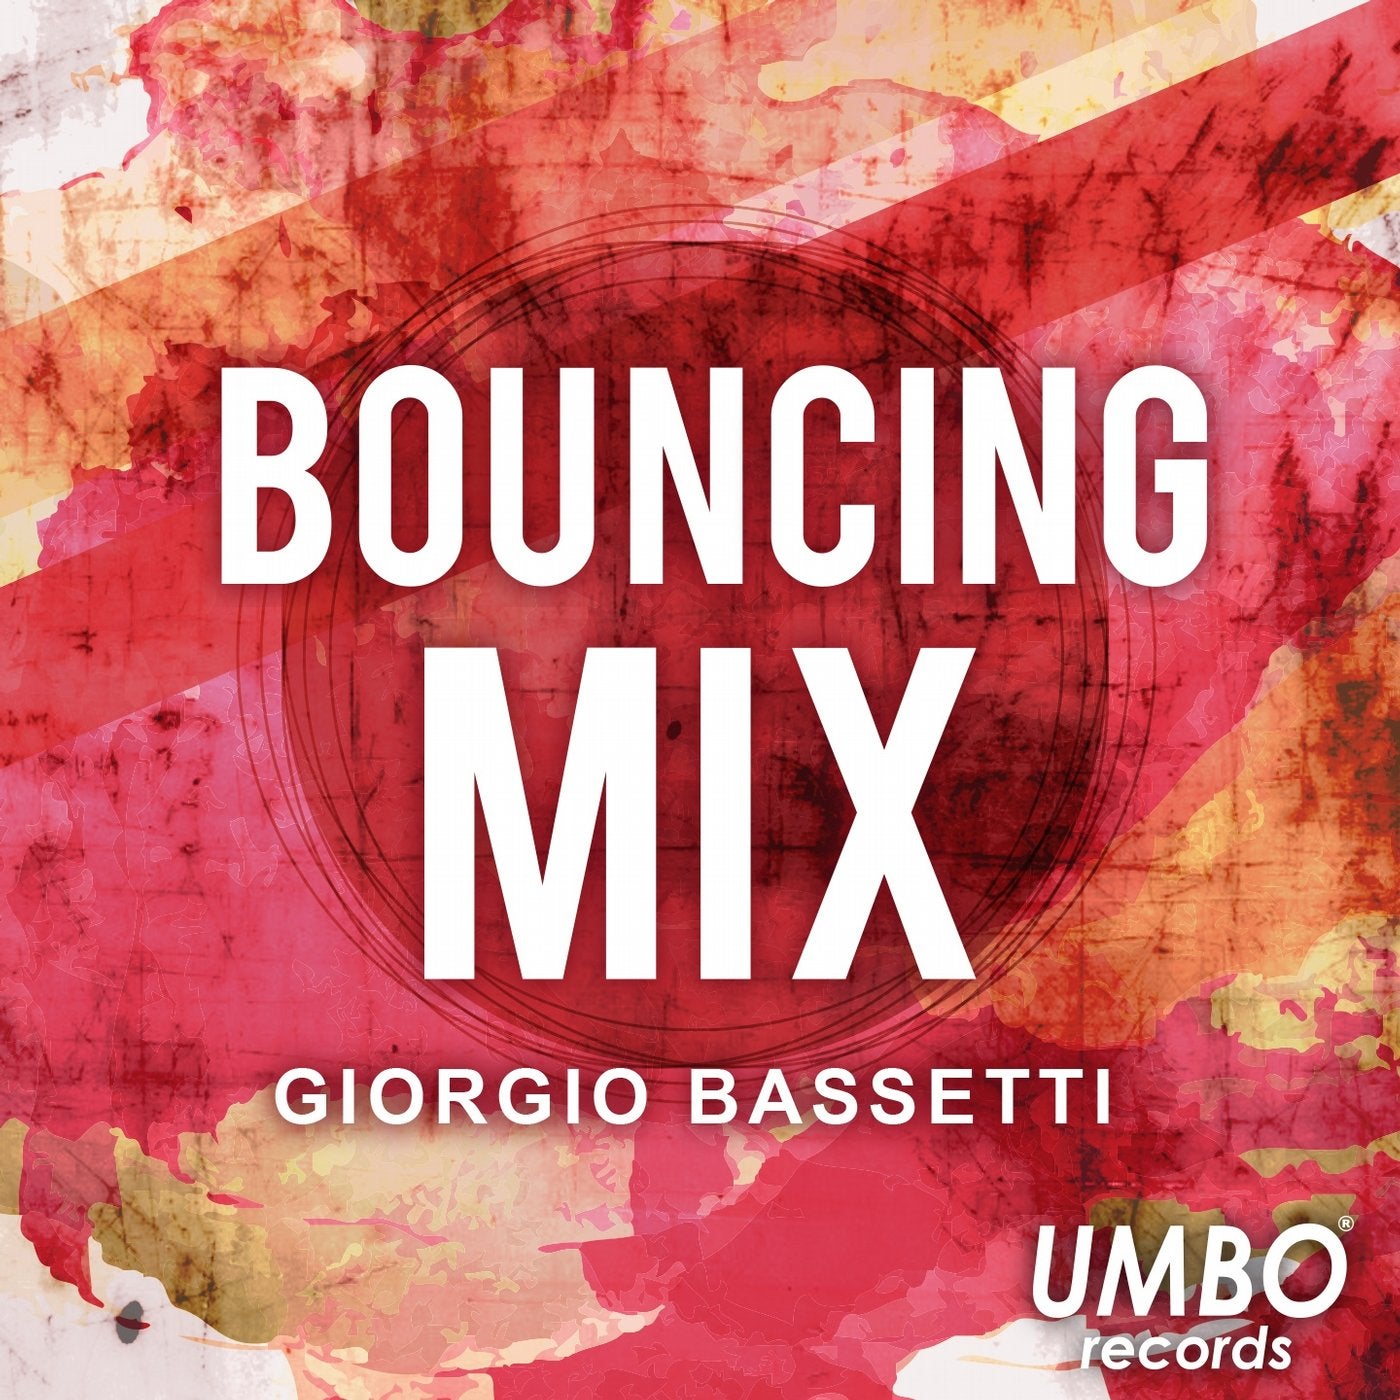 Bouncing (Mix)